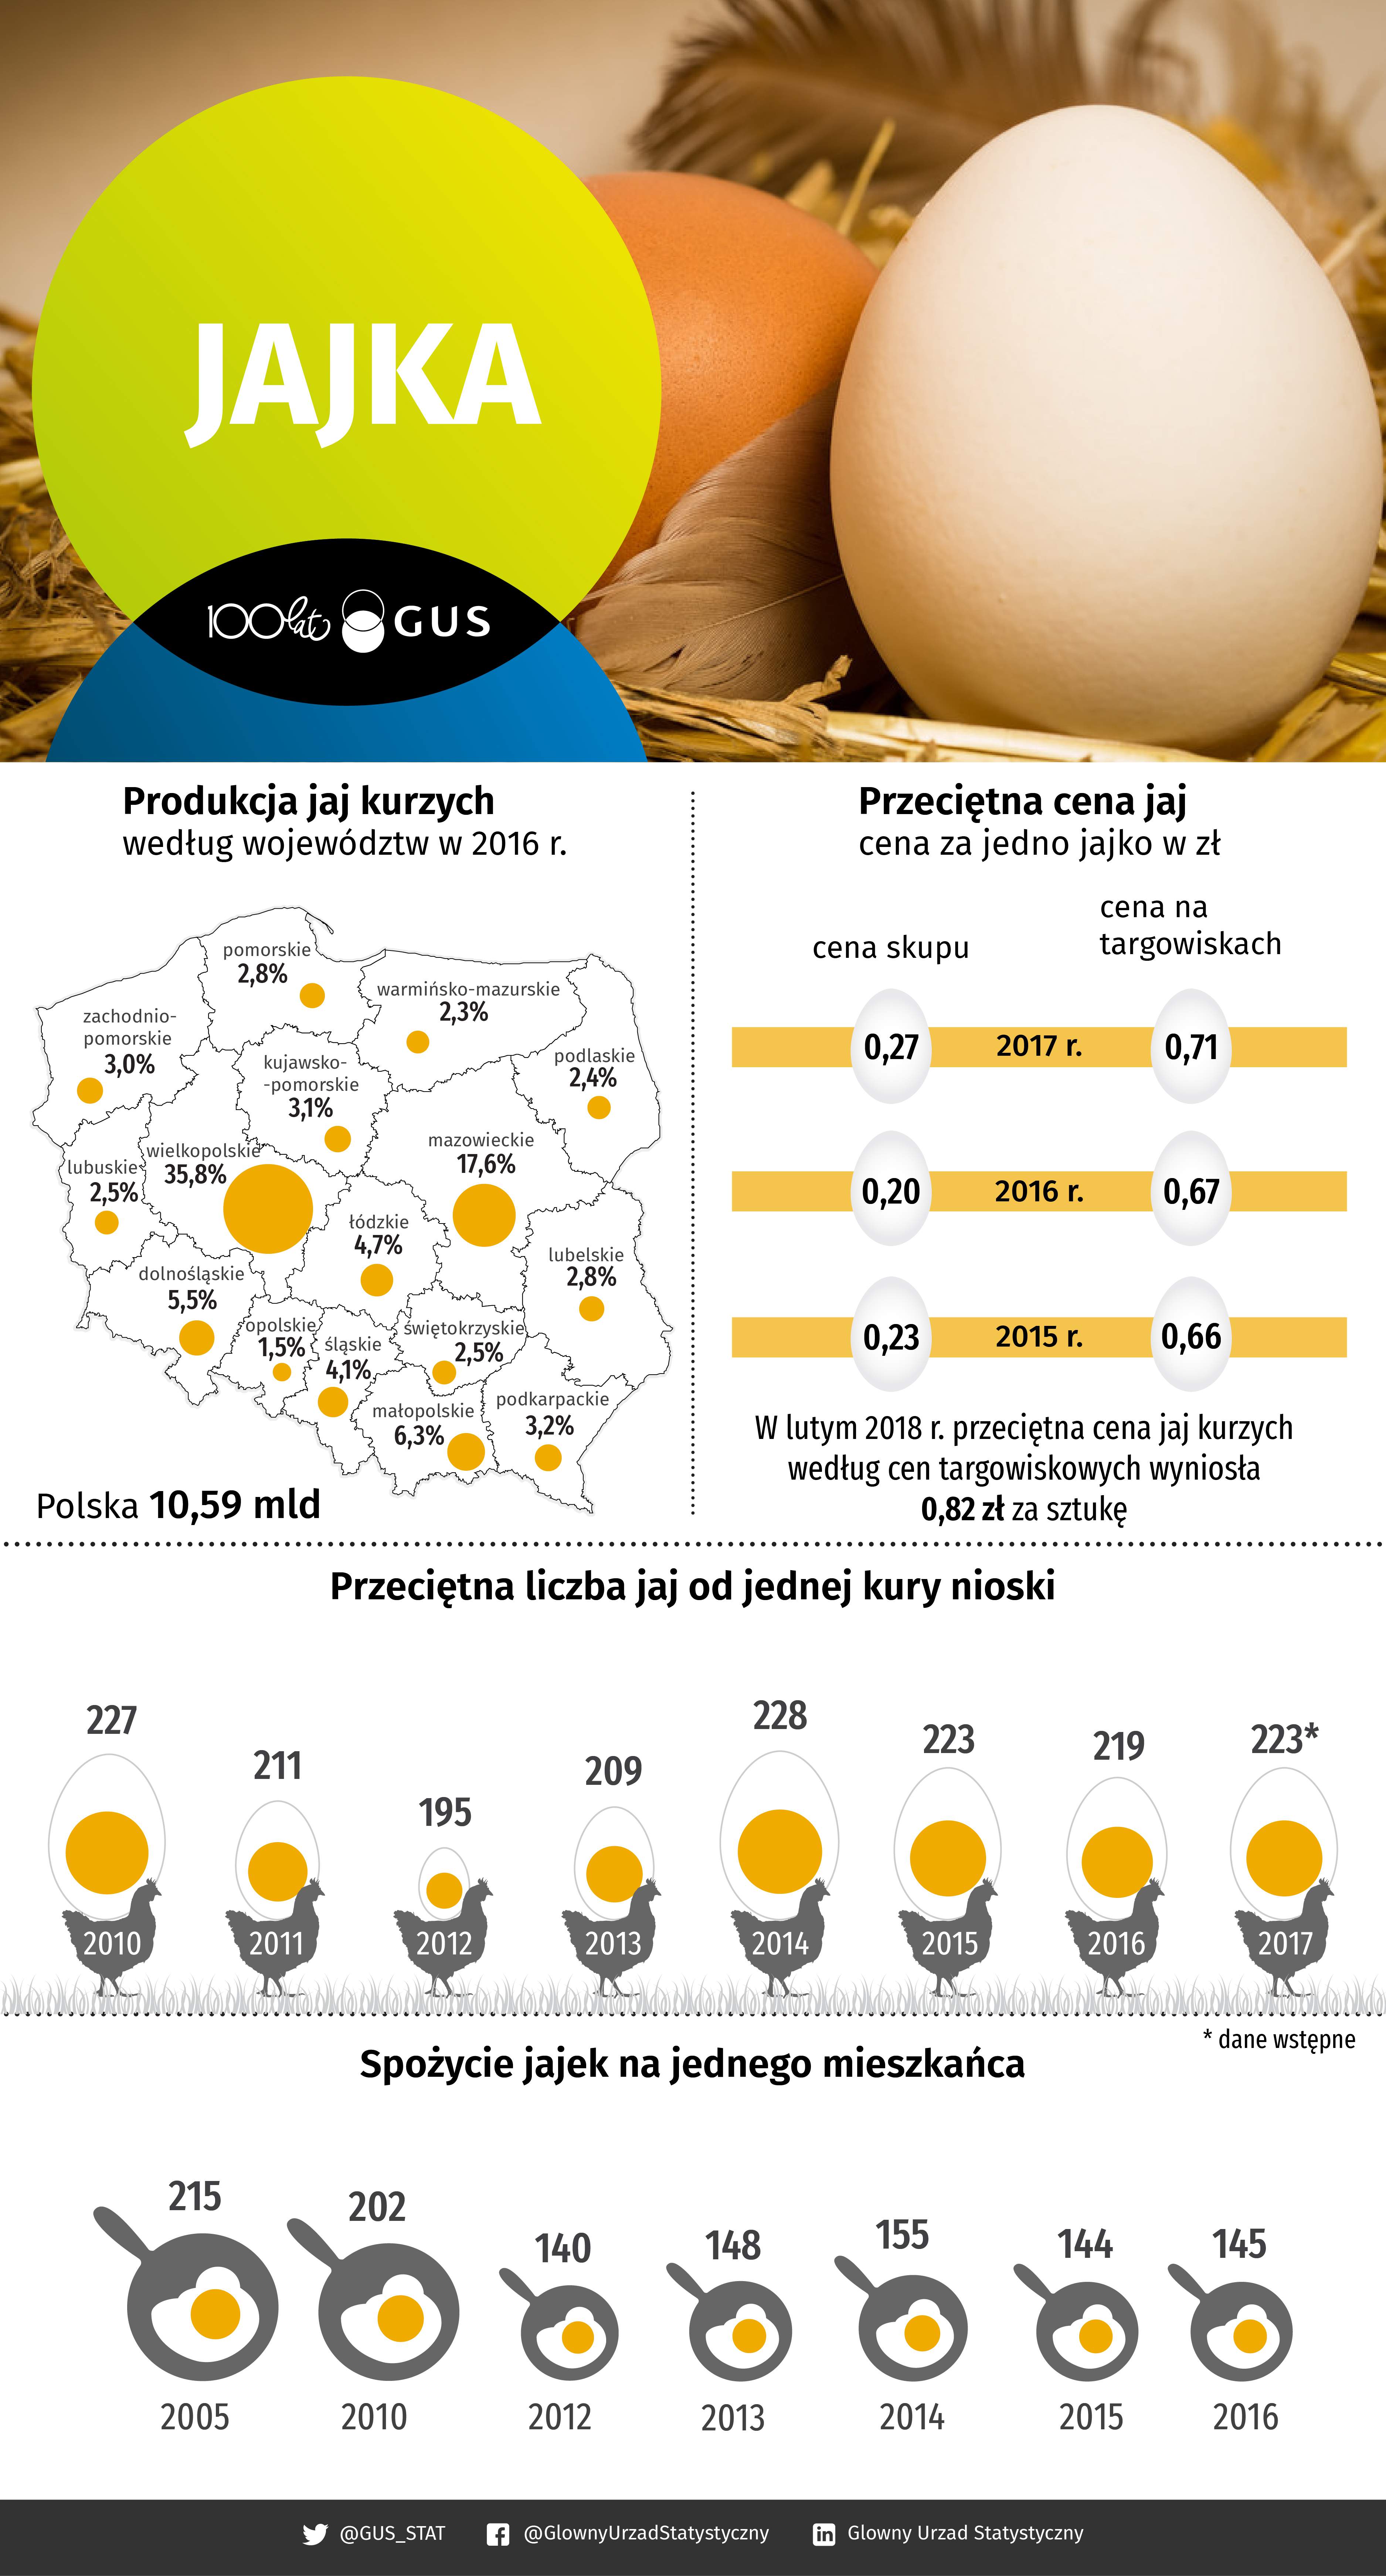 Spadła liczba spożywanych jajek przez przeciętnego Polaka